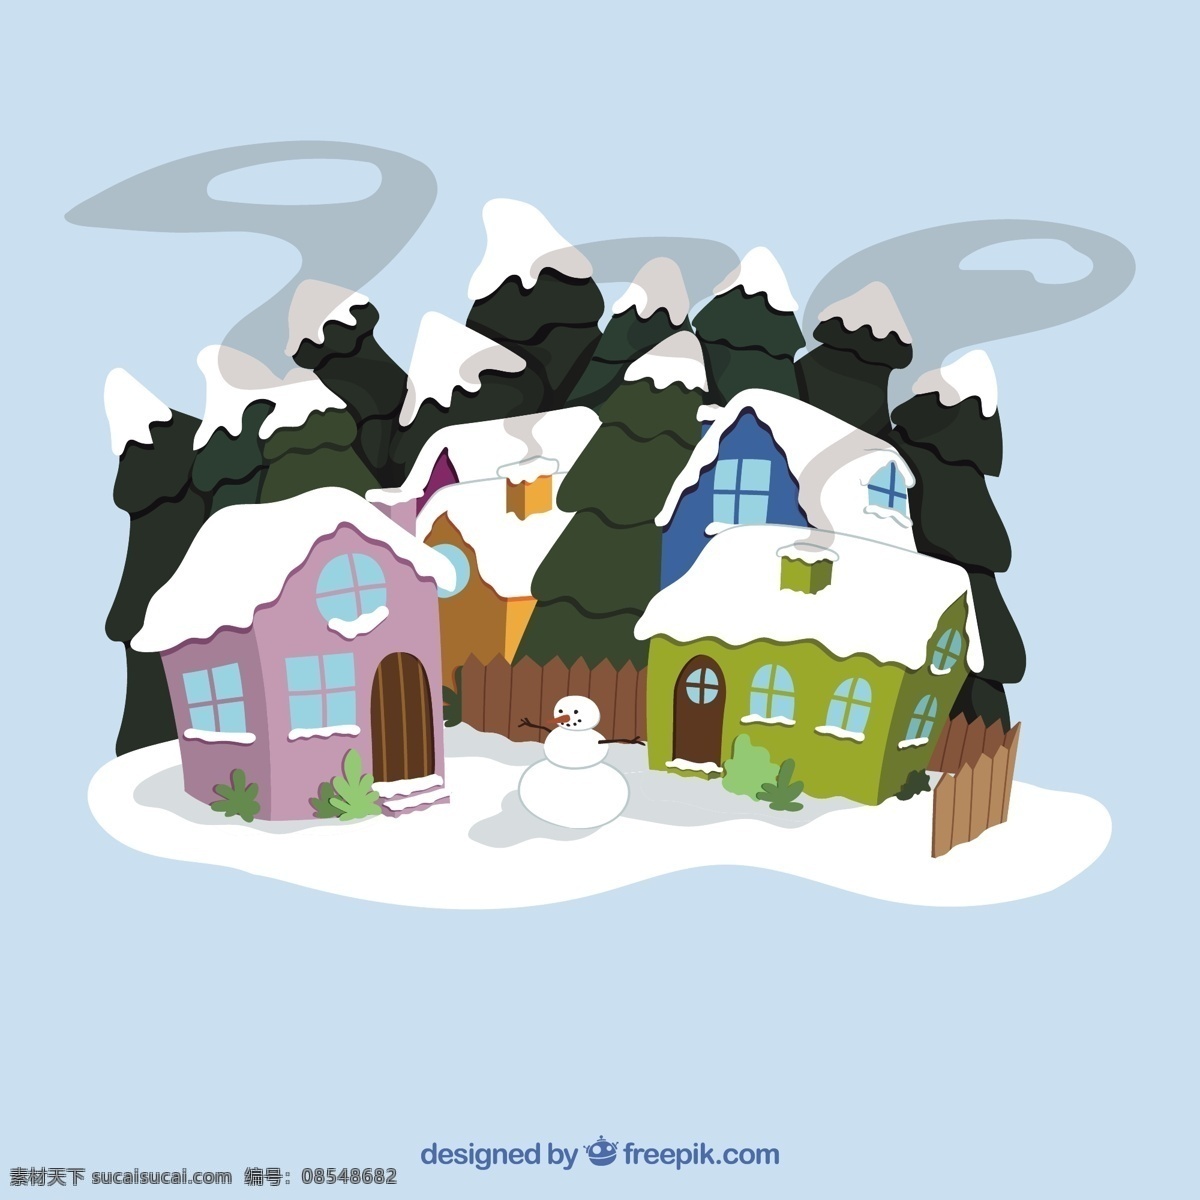 冬季 白雪皑皑 村子 圣诞节 房子 圣诞快乐 圣诞 卡通 冬天 快乐 可爱 庆祝活动 假期 假日 可爱的 风格 季节 节日